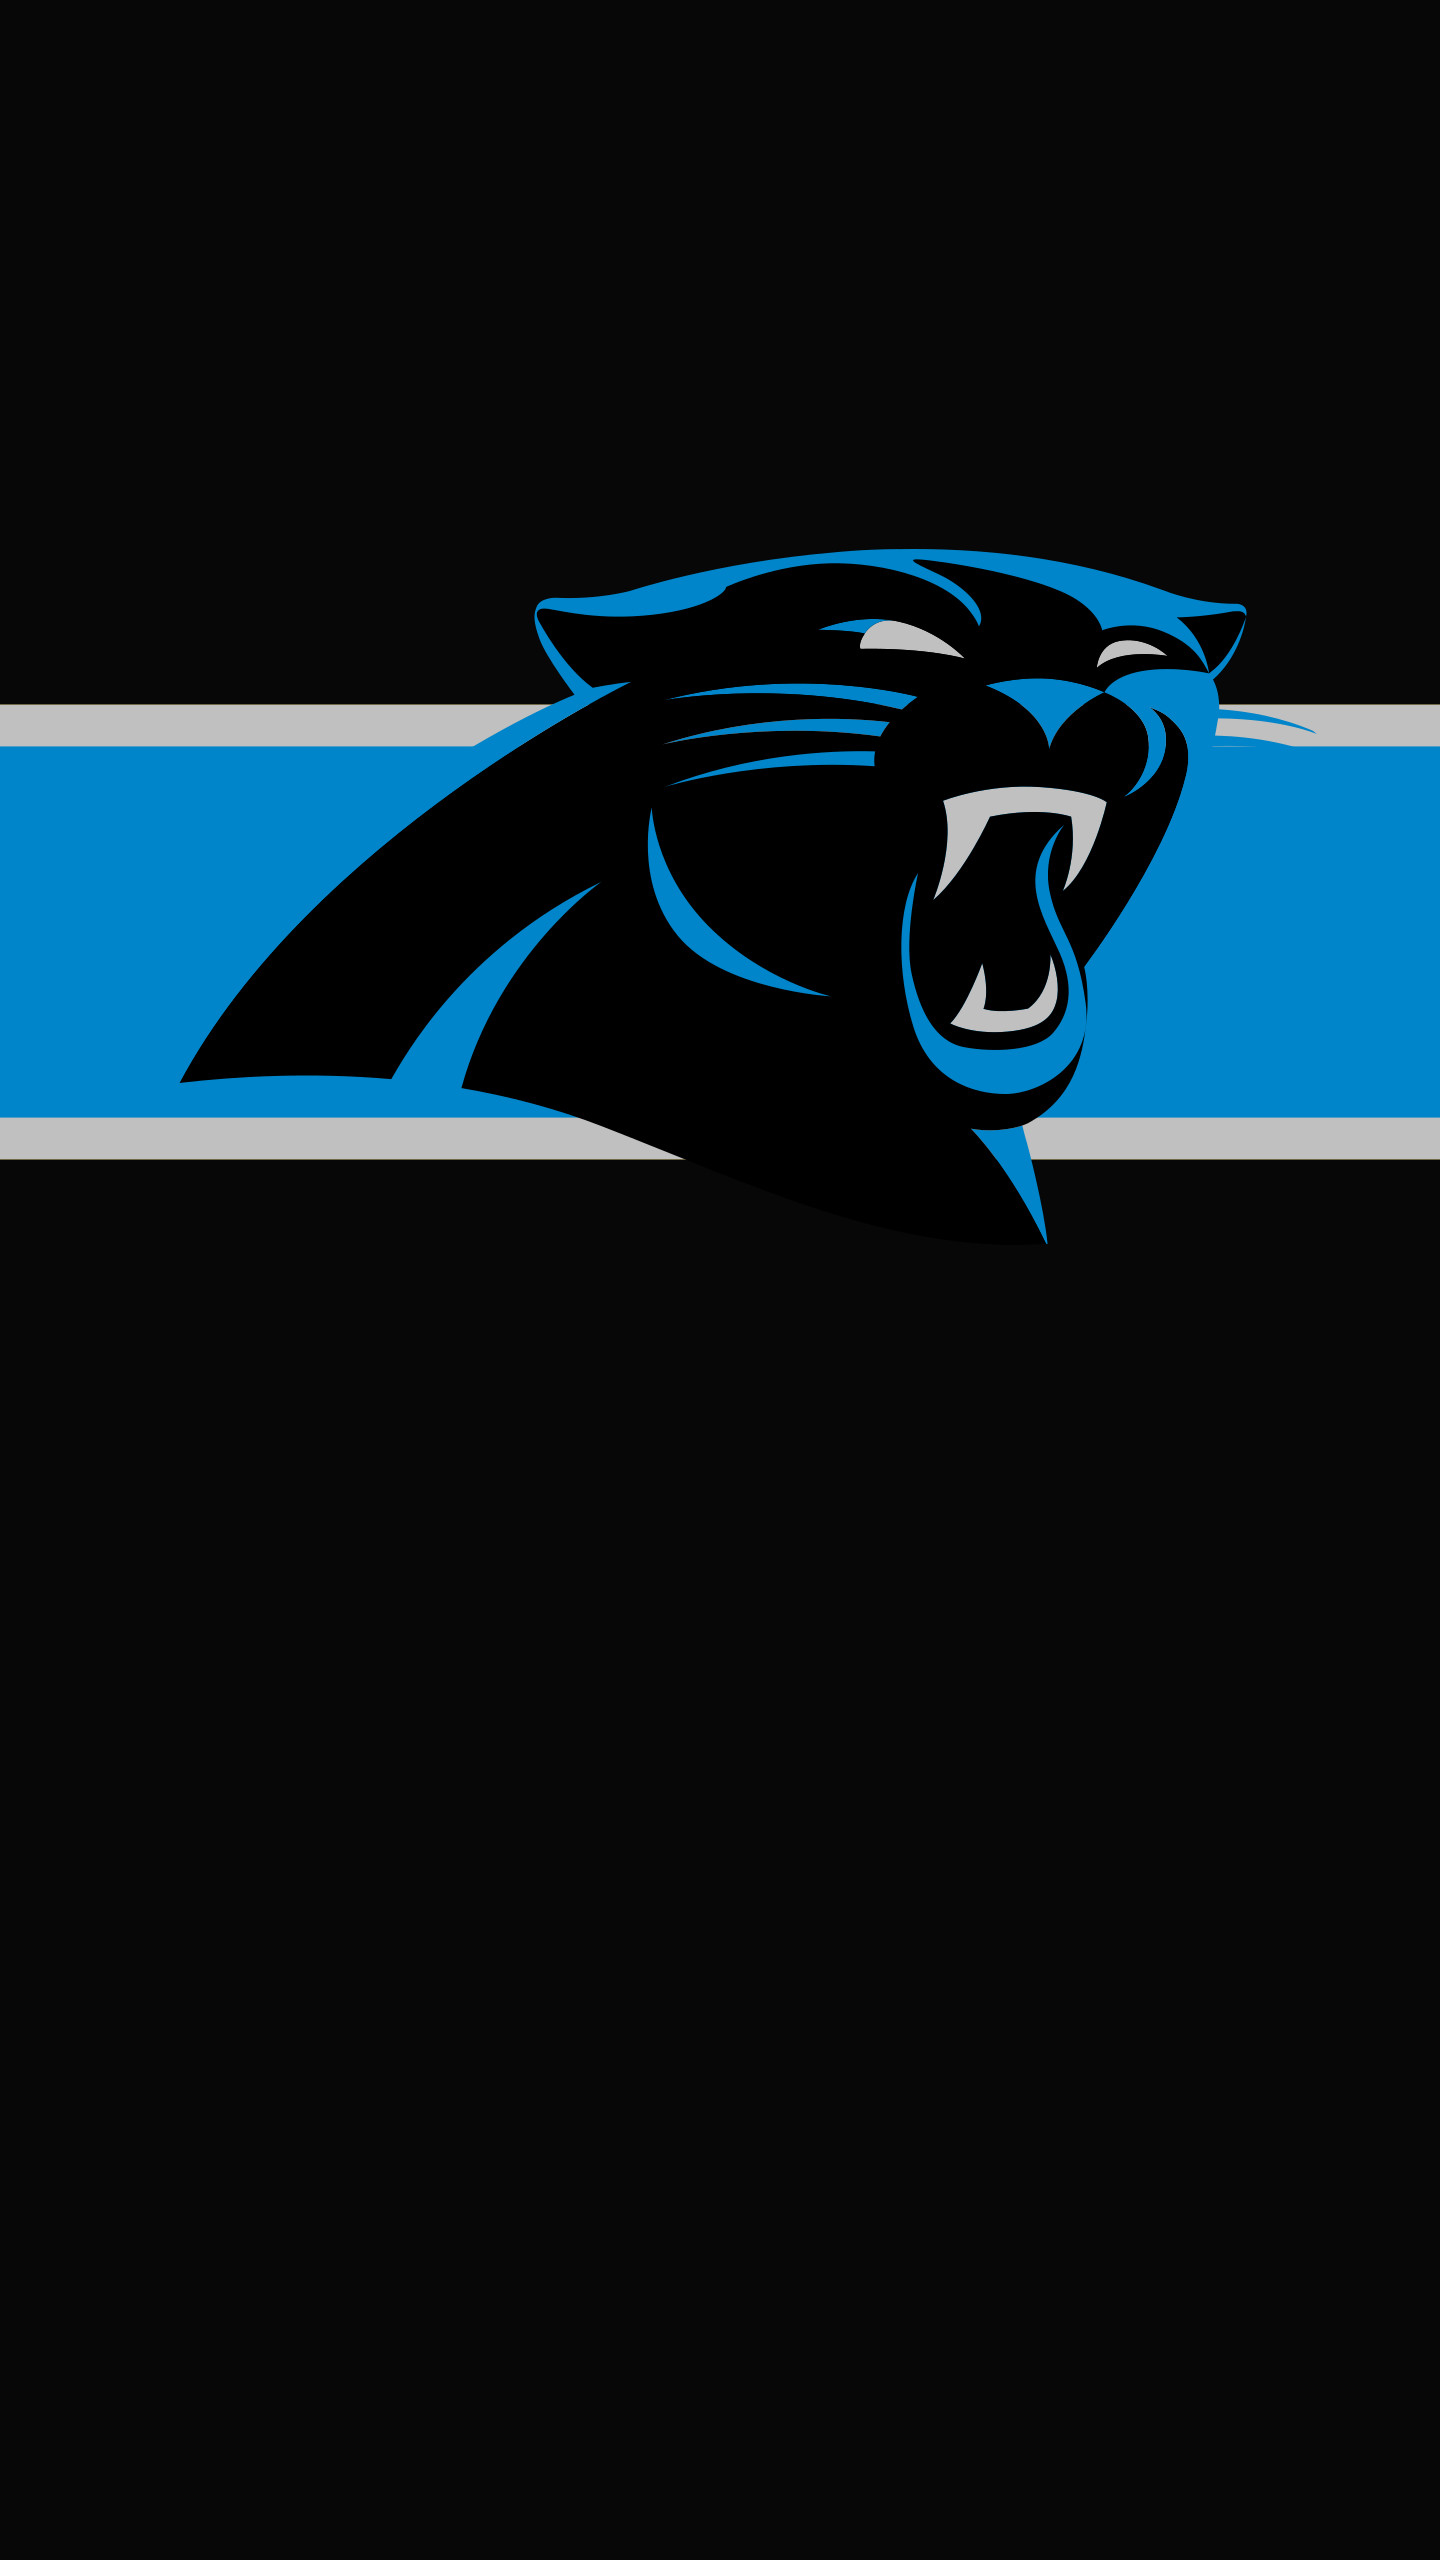 Wallpaper Carolina Panthers Logo Wallpapers